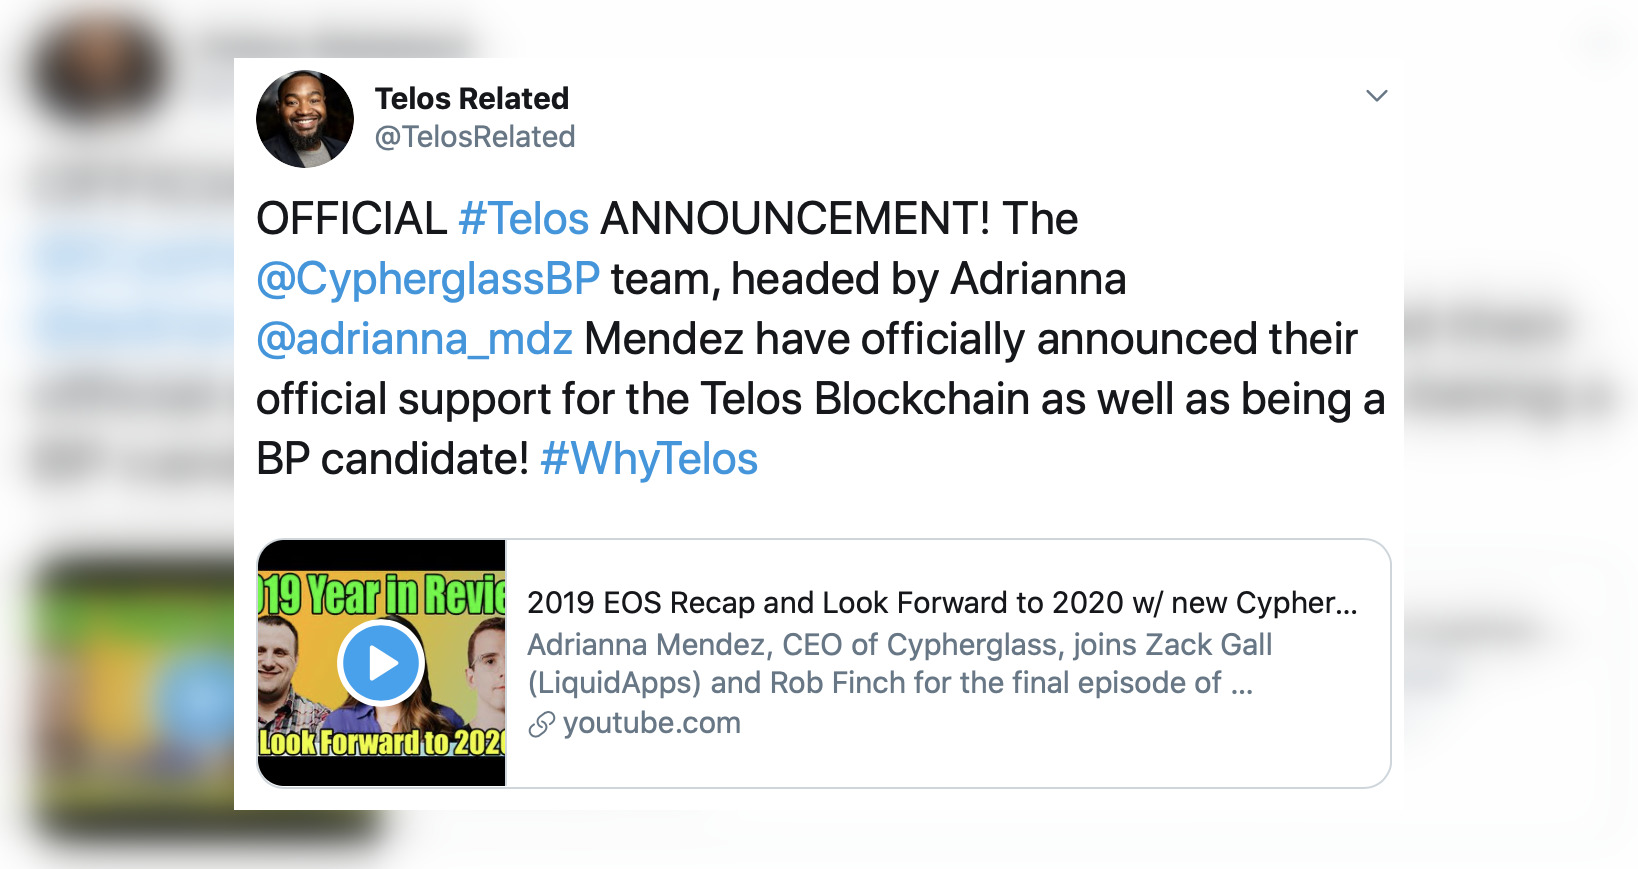 EOS 节点 Cypherglass 将作为竞选节点加入 Telos 区块链